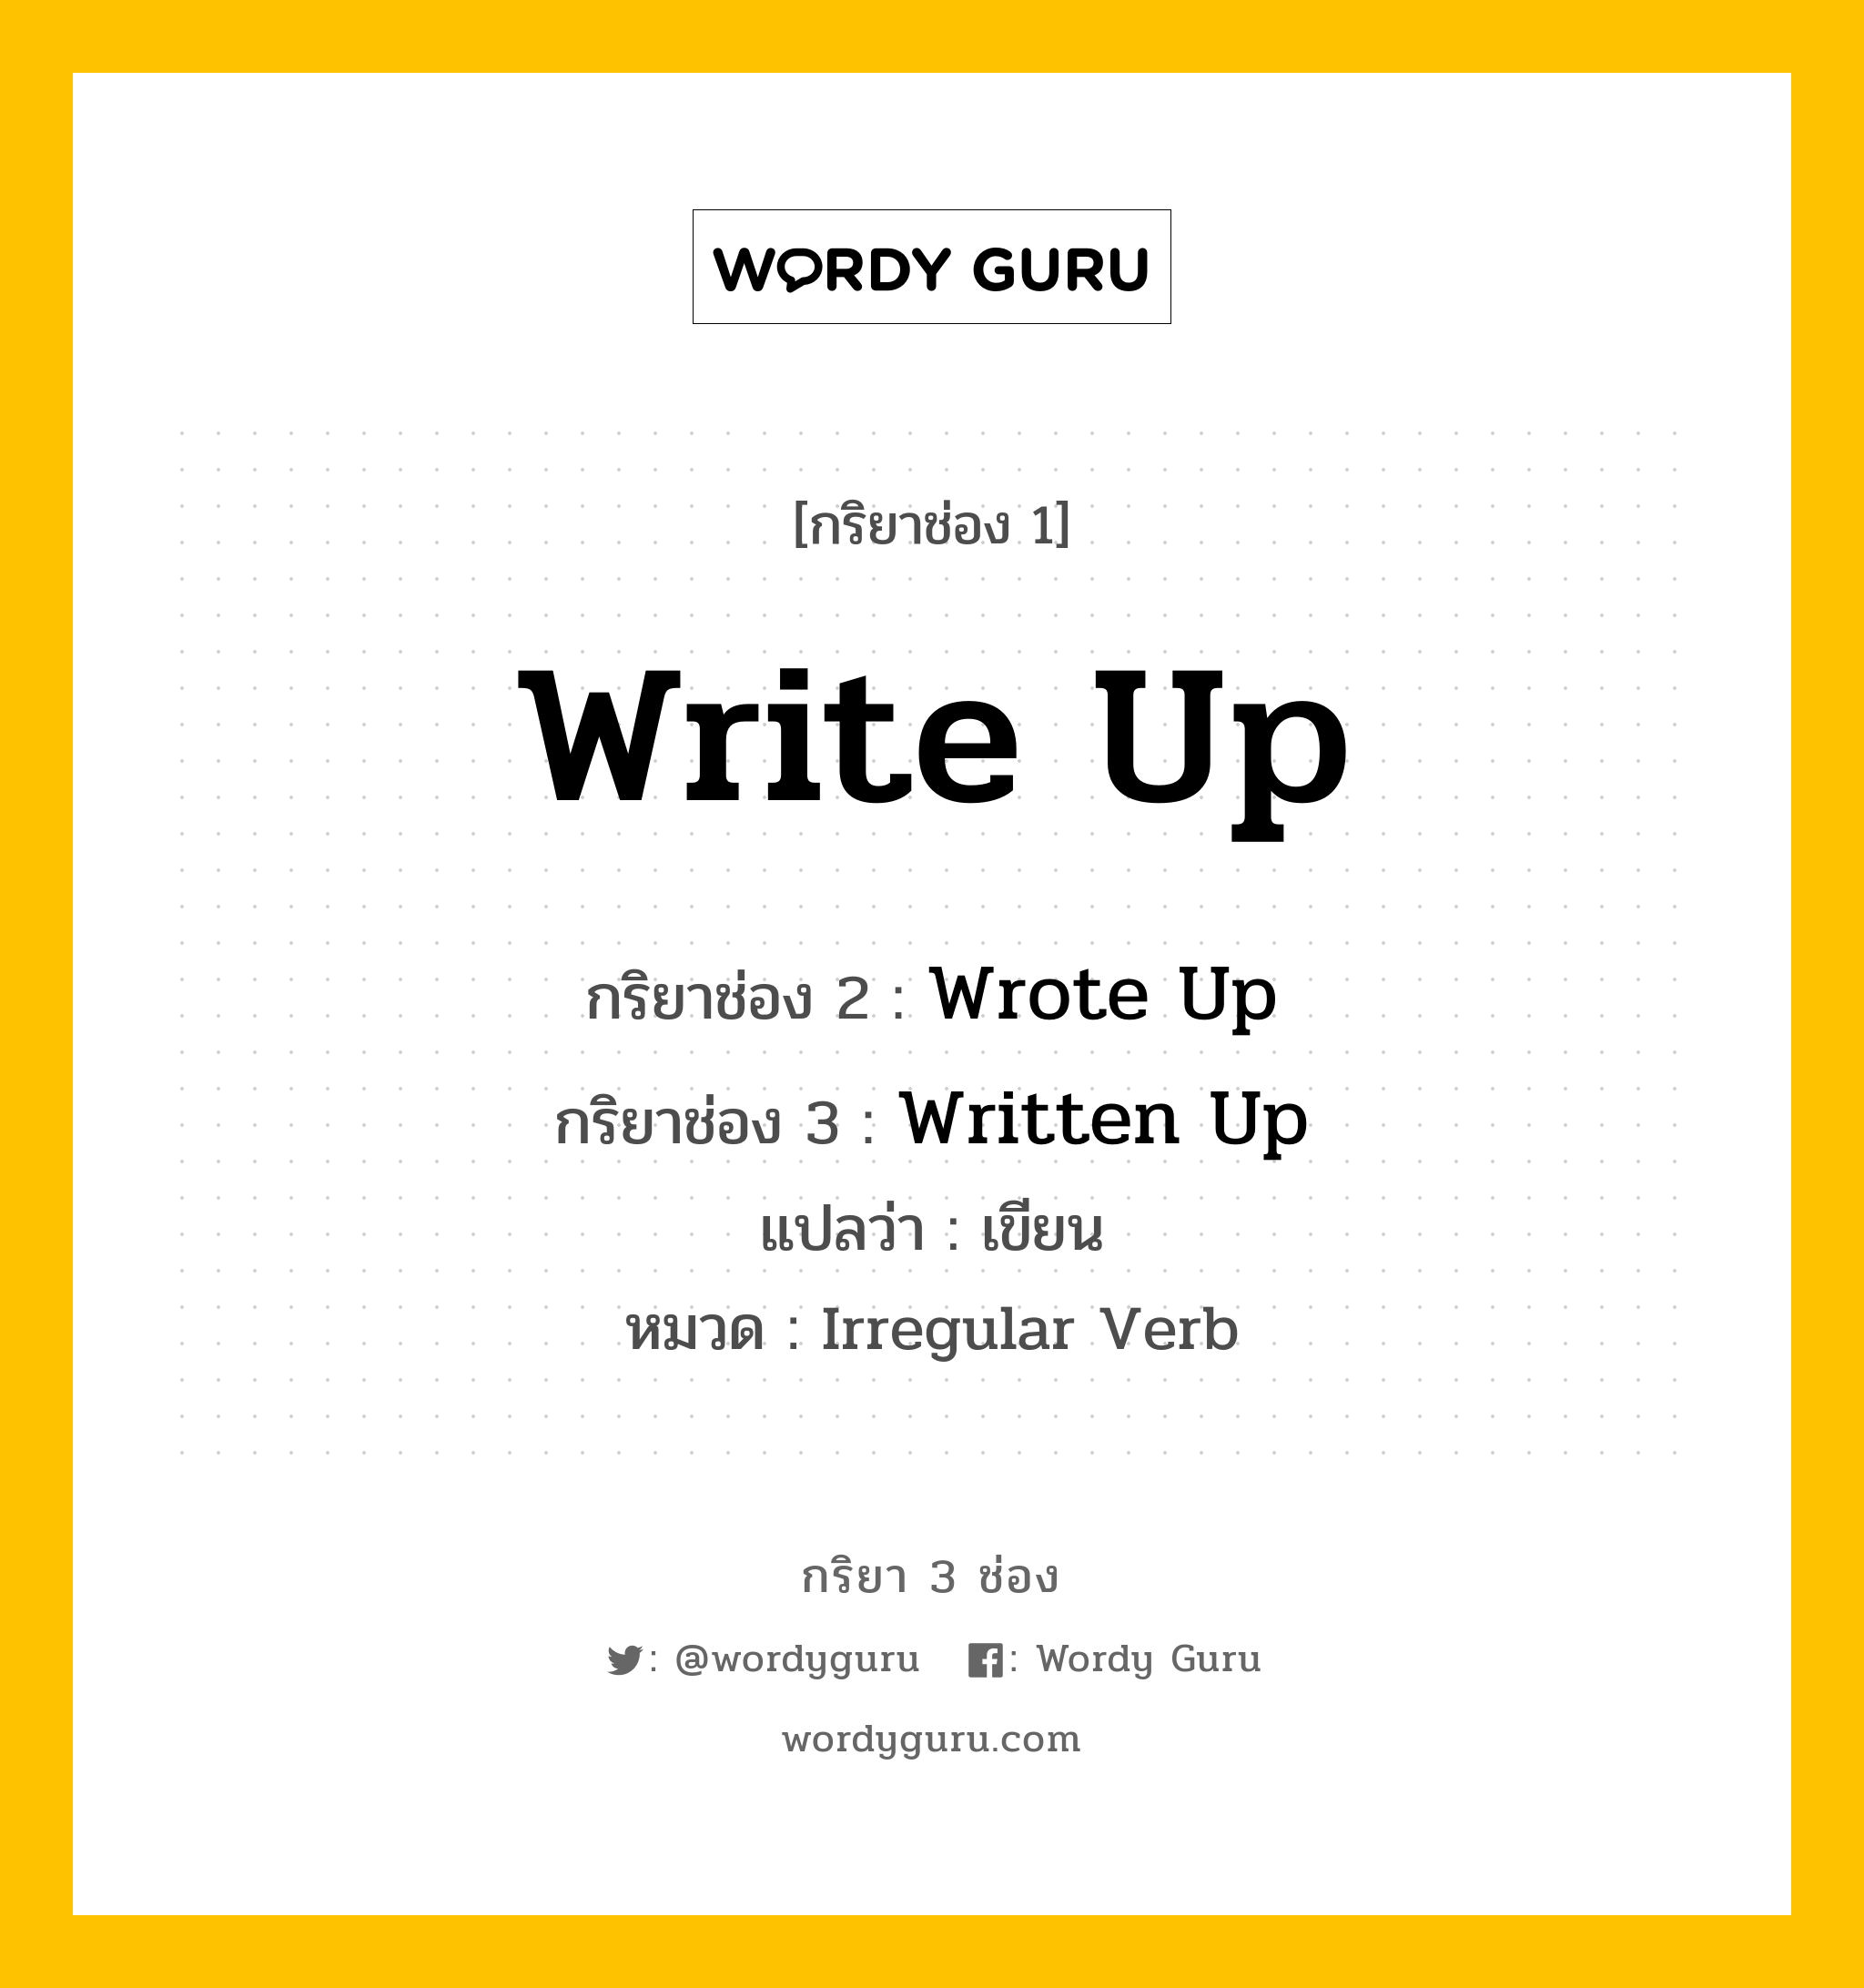 กริยา 3 ช่อง: Write Up ช่อง 2 Write Up ช่อง 3 คืออะไร, กริยาช่อง 1 Write Up กริยาช่อง 2 Wrote Up กริยาช่อง 3 Written Up แปลว่า เขียน หมวด Irregular Verb หมวด Irregular Verb